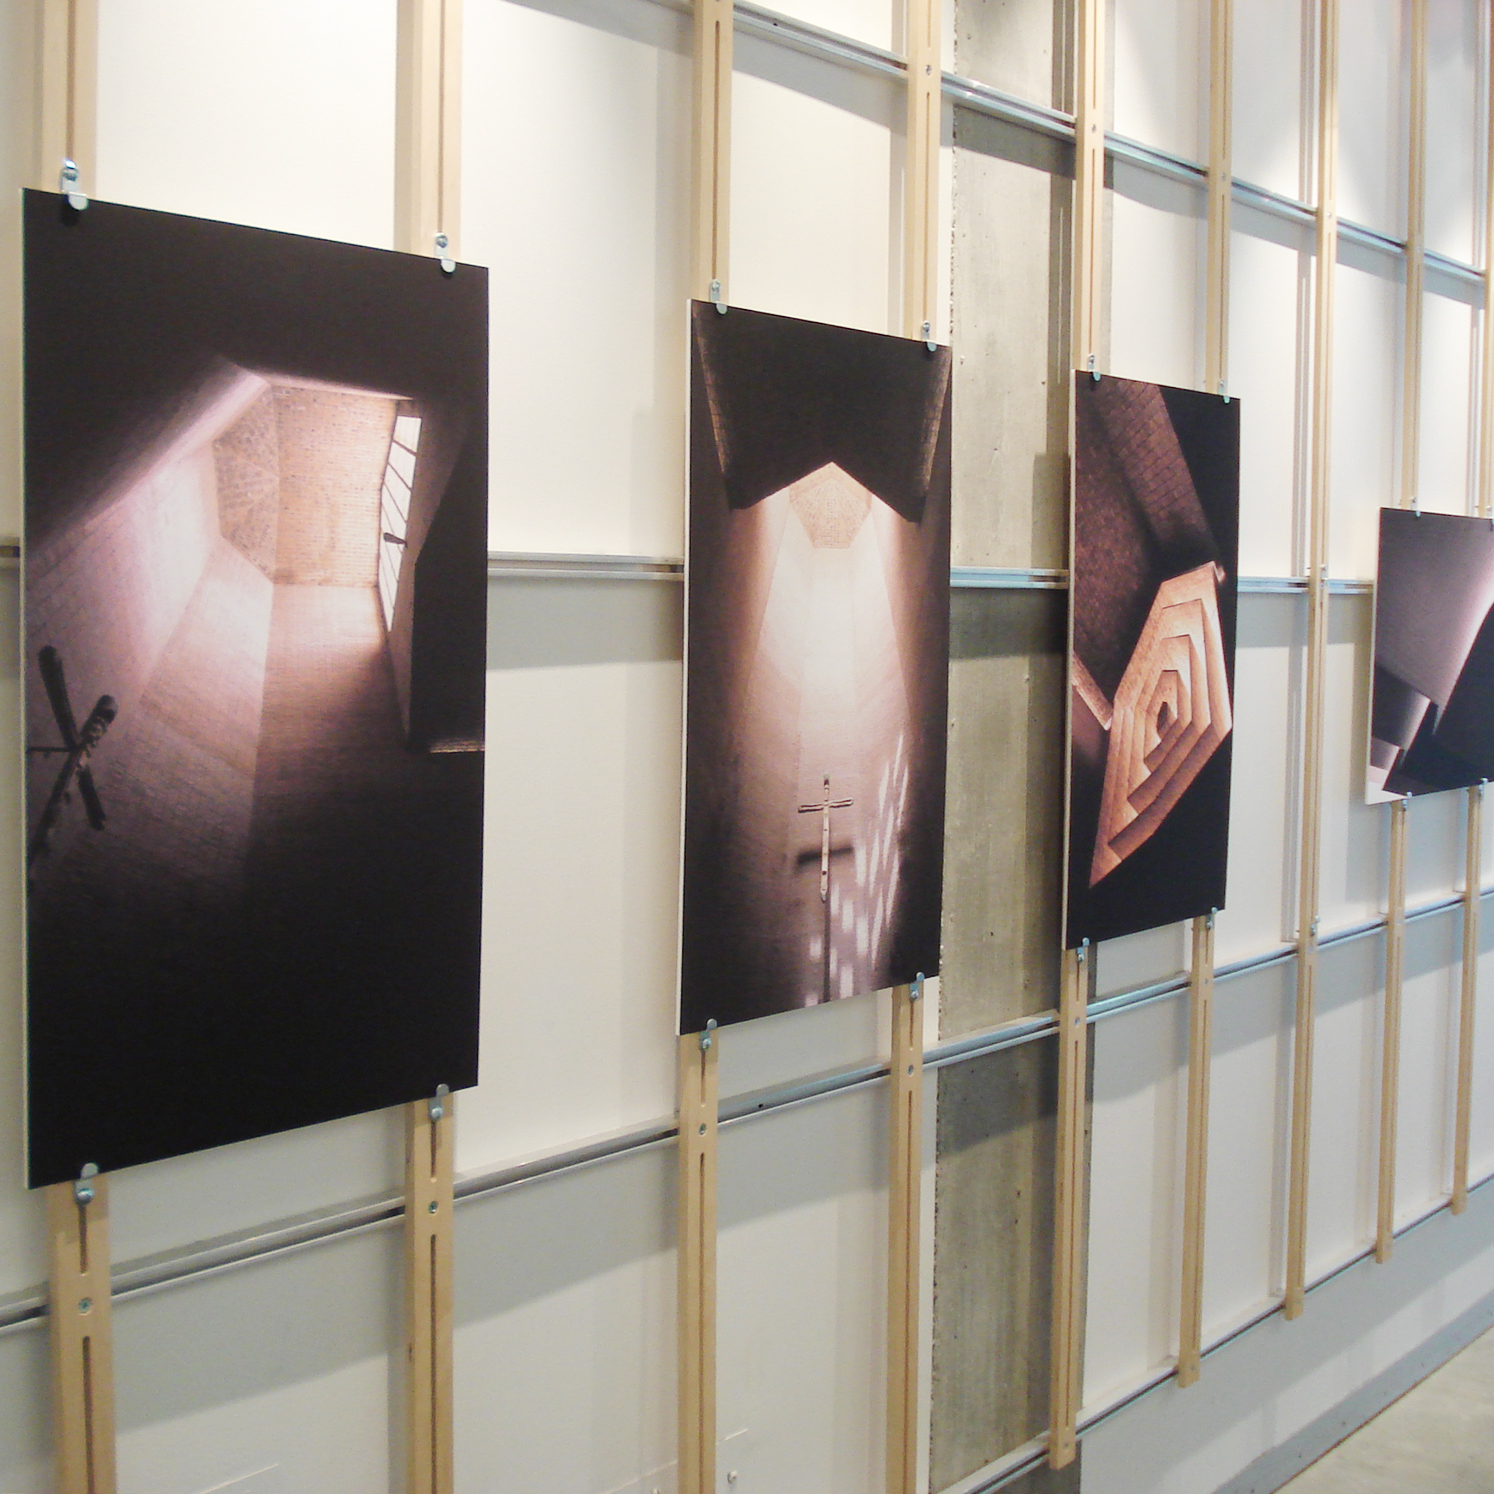 Eladio Dieste: A Principled Builder exhibition board photos in HGA gallery